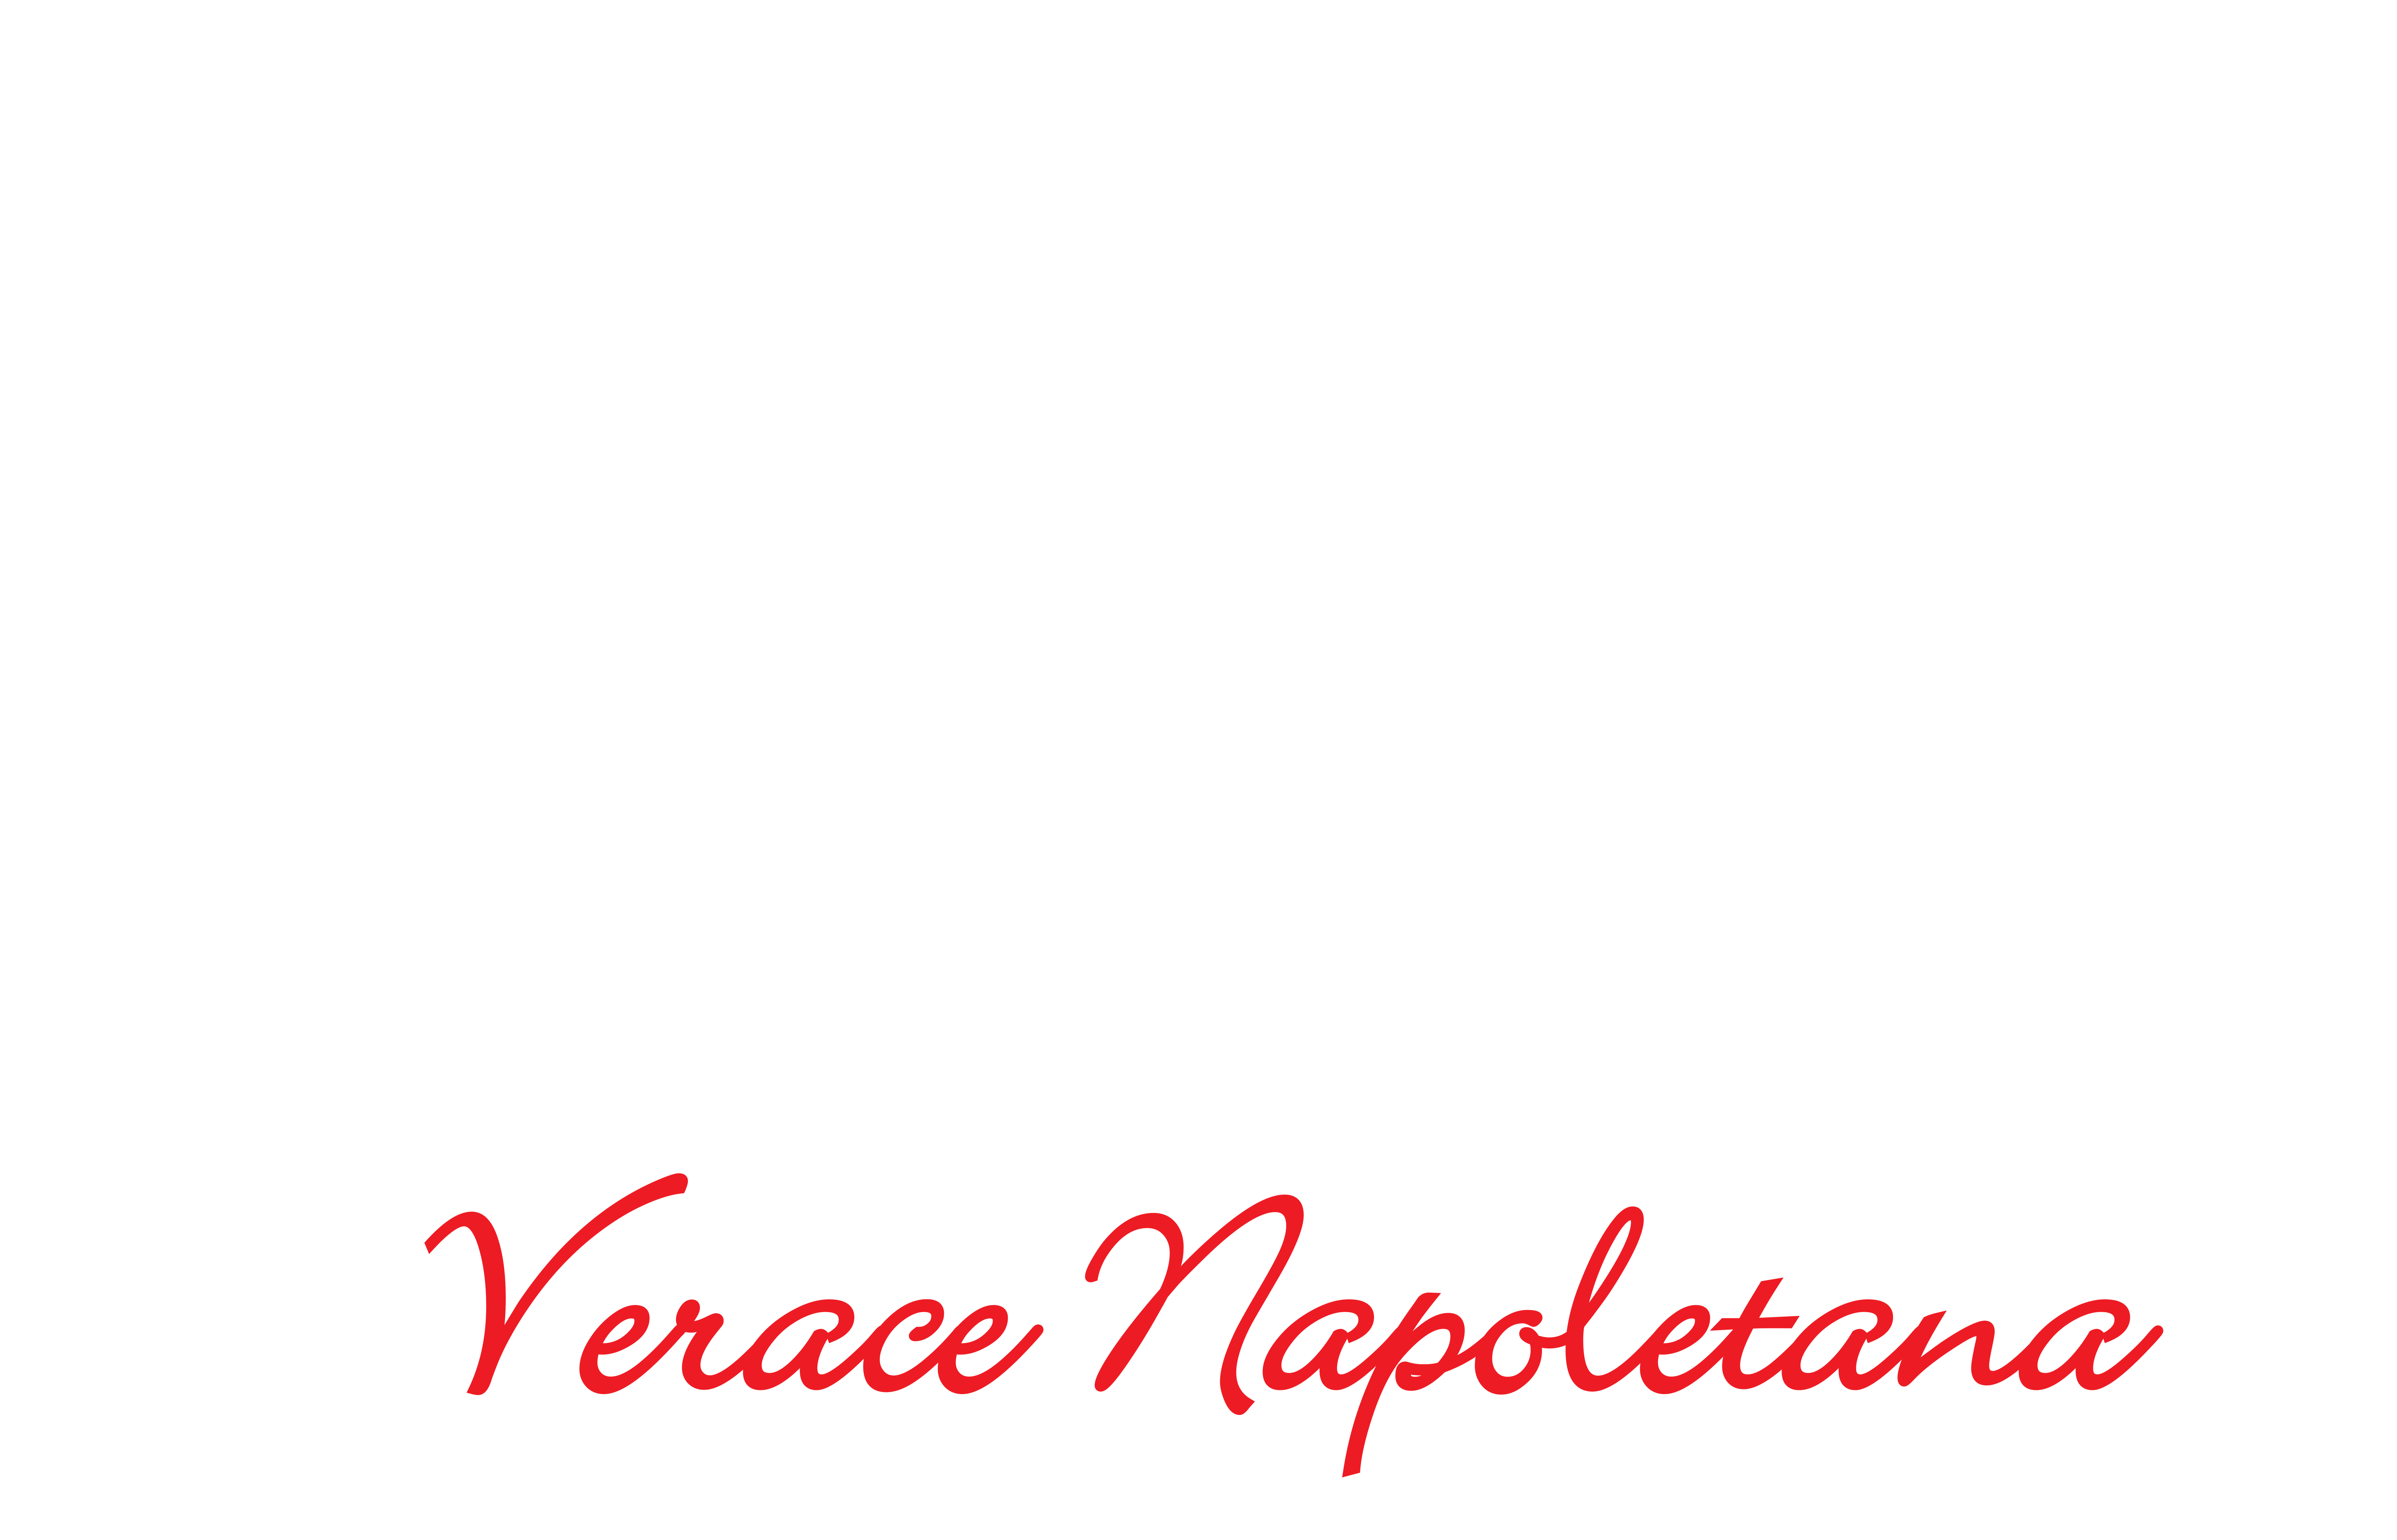 Pizzeria Napoletana Lello